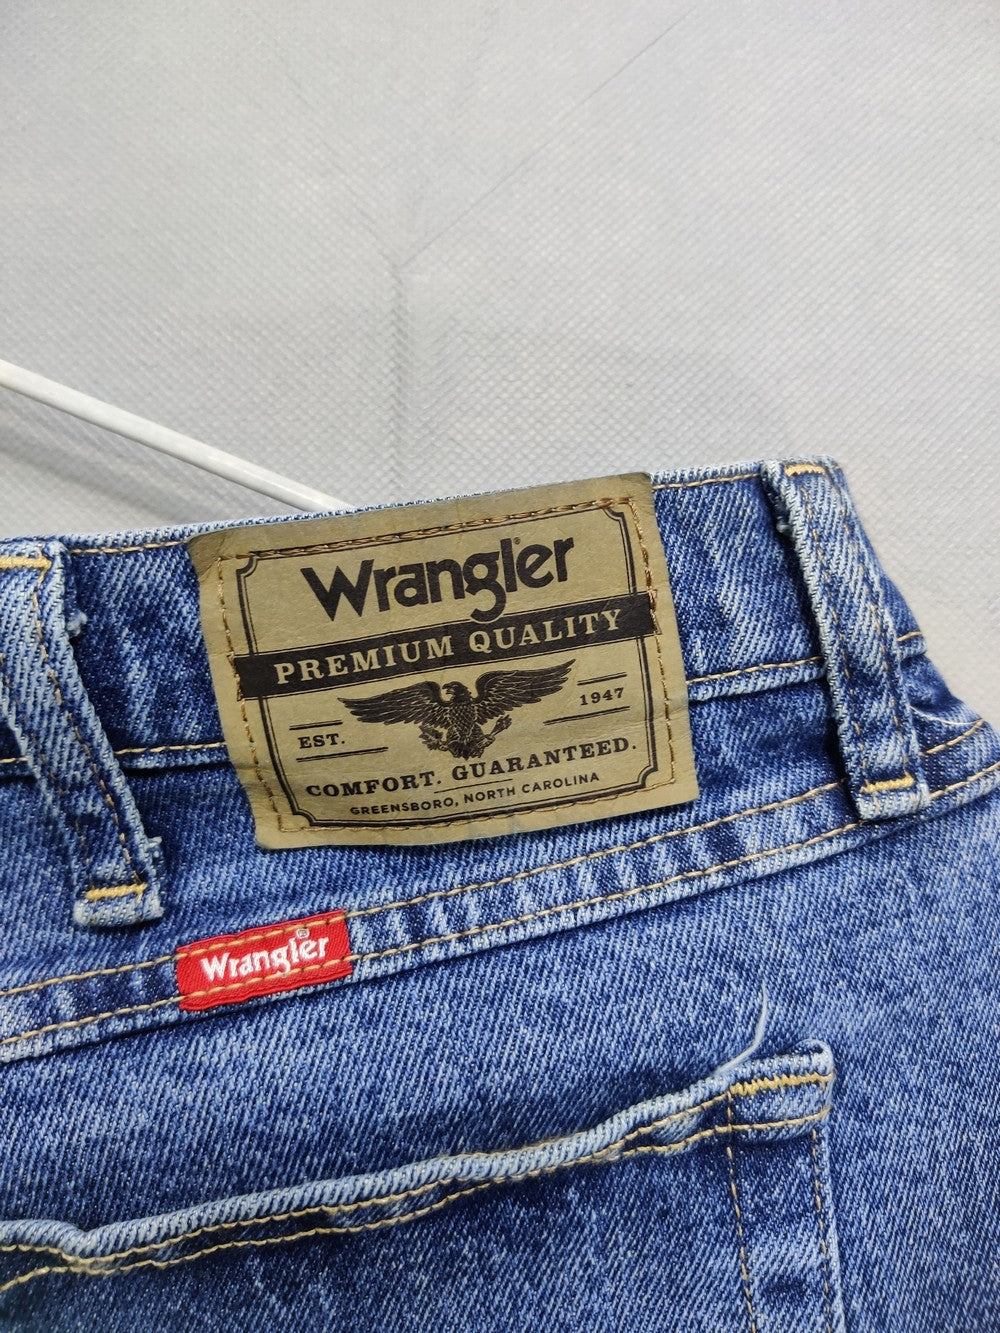 Wrangler Branded Original Denim Jeans For Men